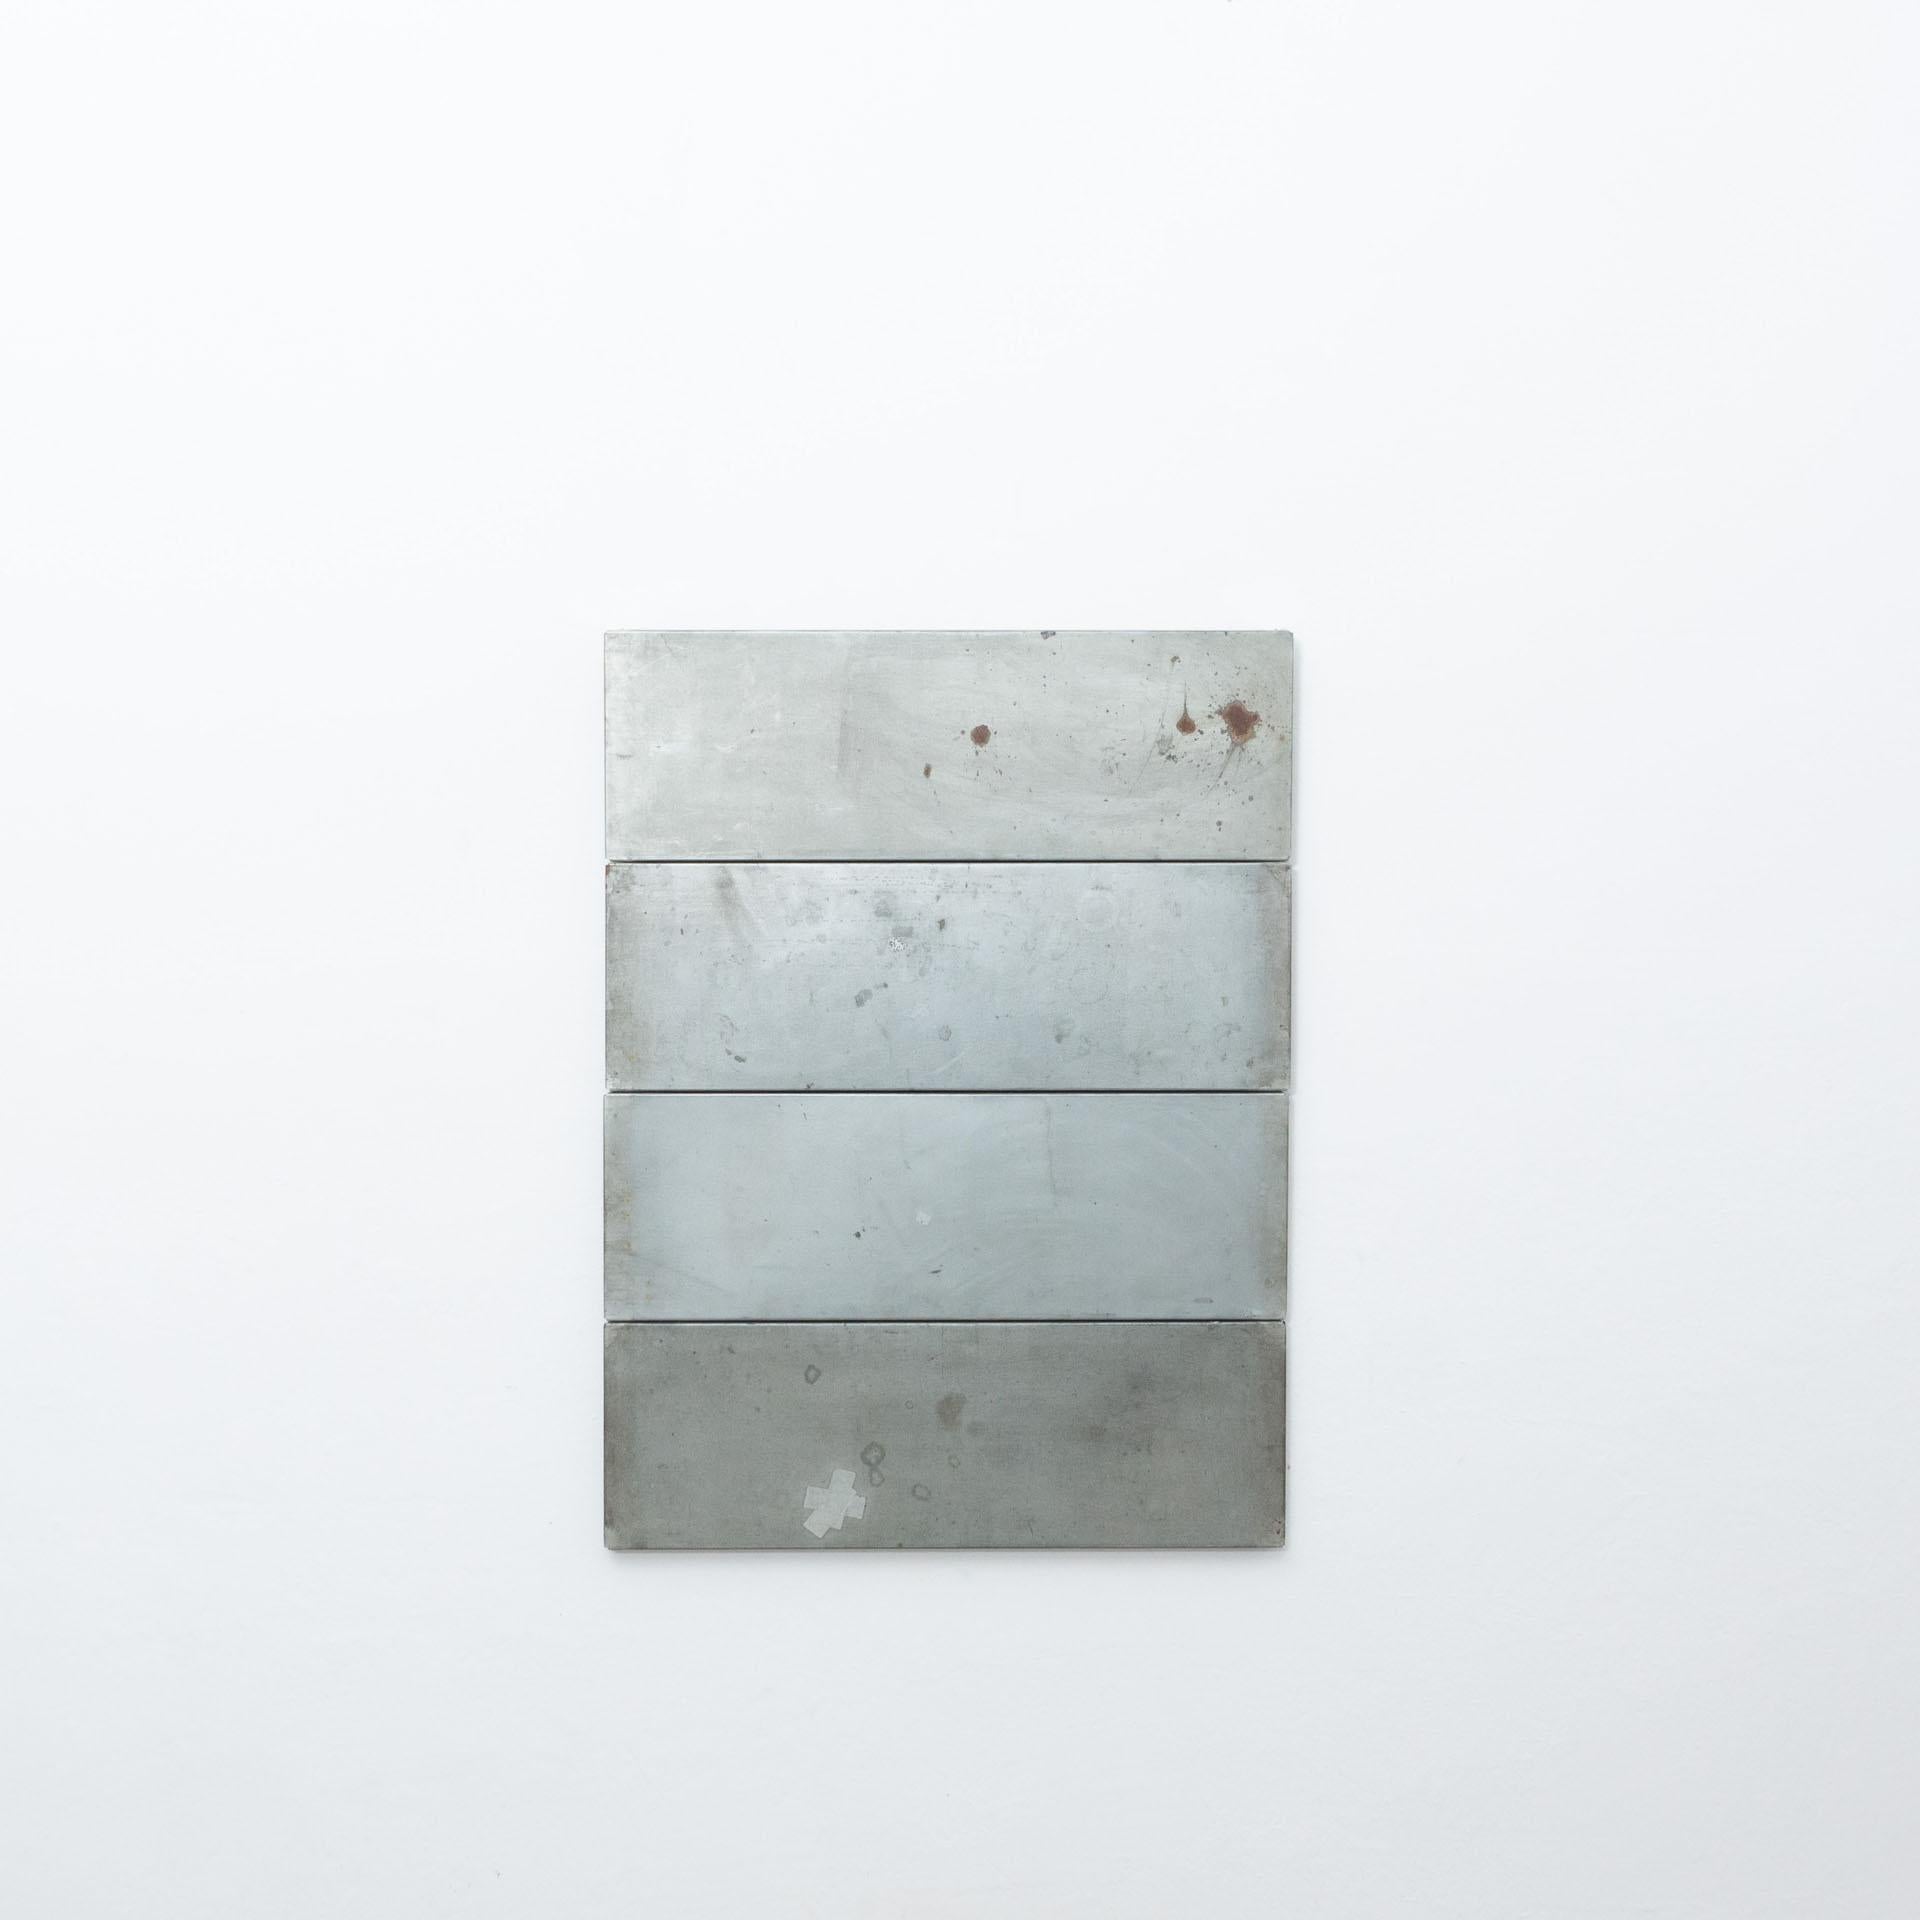 Ramon Horts, Minimalistisches Kunstwerk.

Strukturen aus Metallkompositionen, hergestellt in Barcelona, um 2019. 

Im Originalzustand.

Verkratztes Metall, verrostet und lackiert.